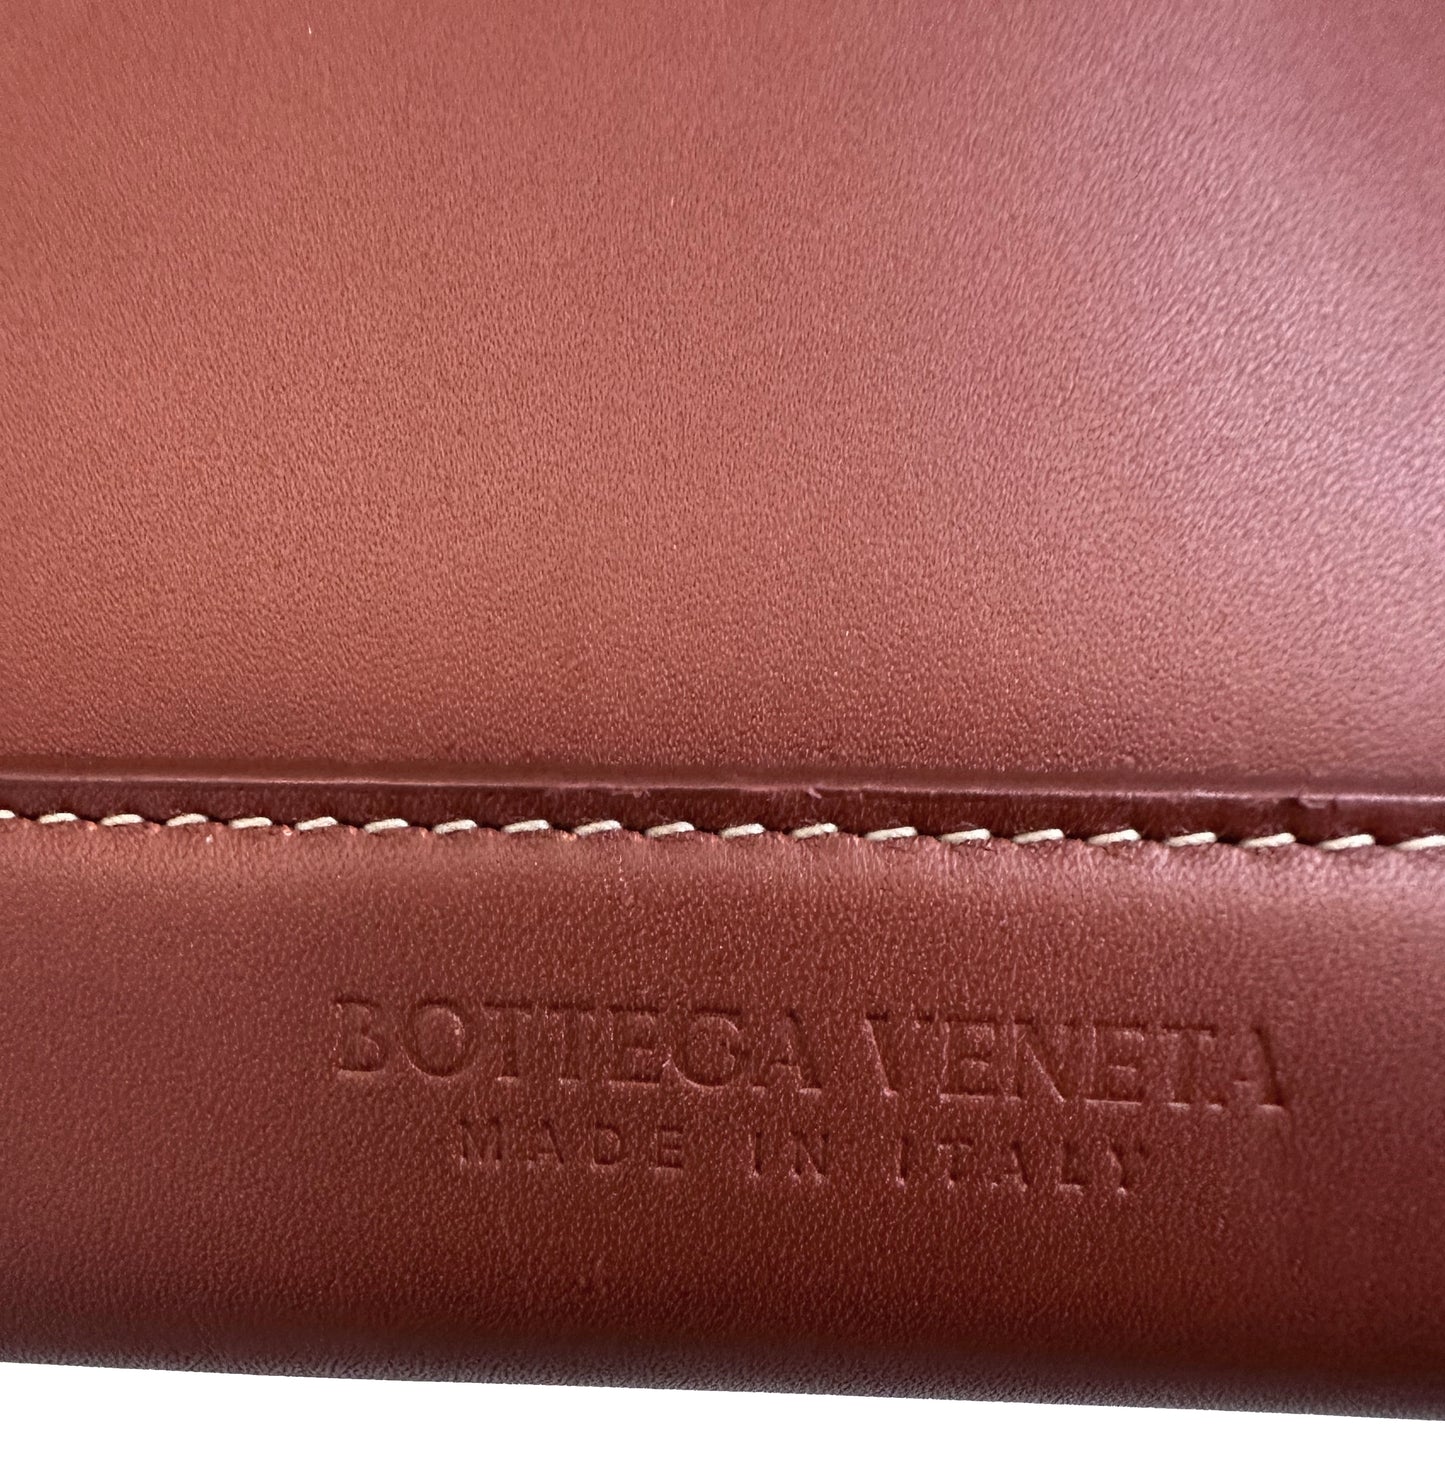 BOTTEGA VENETA "Arco" Leather Satchel Cognac